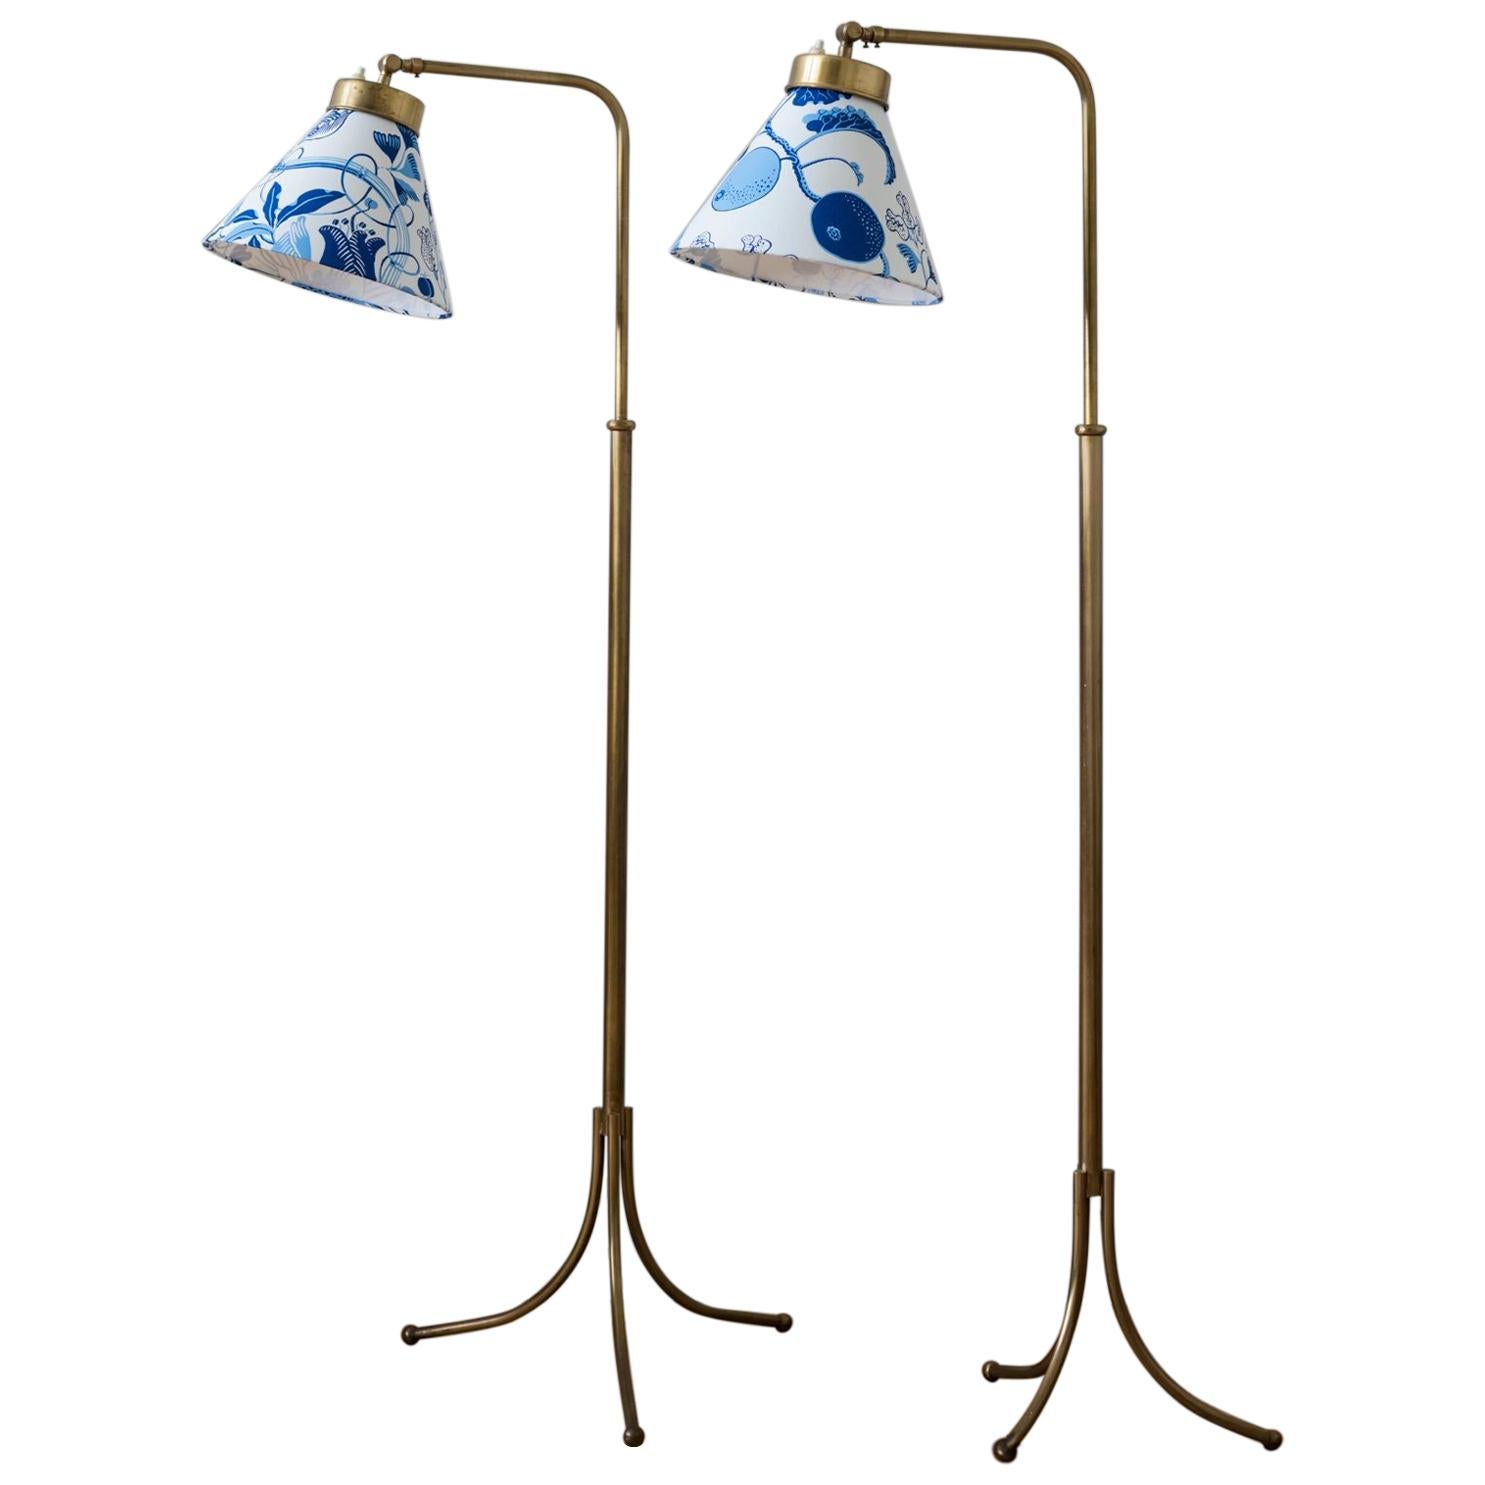 Pair of 1842 Brass Floor Lamps Designed by Josef Frank for Svenskt Tenn